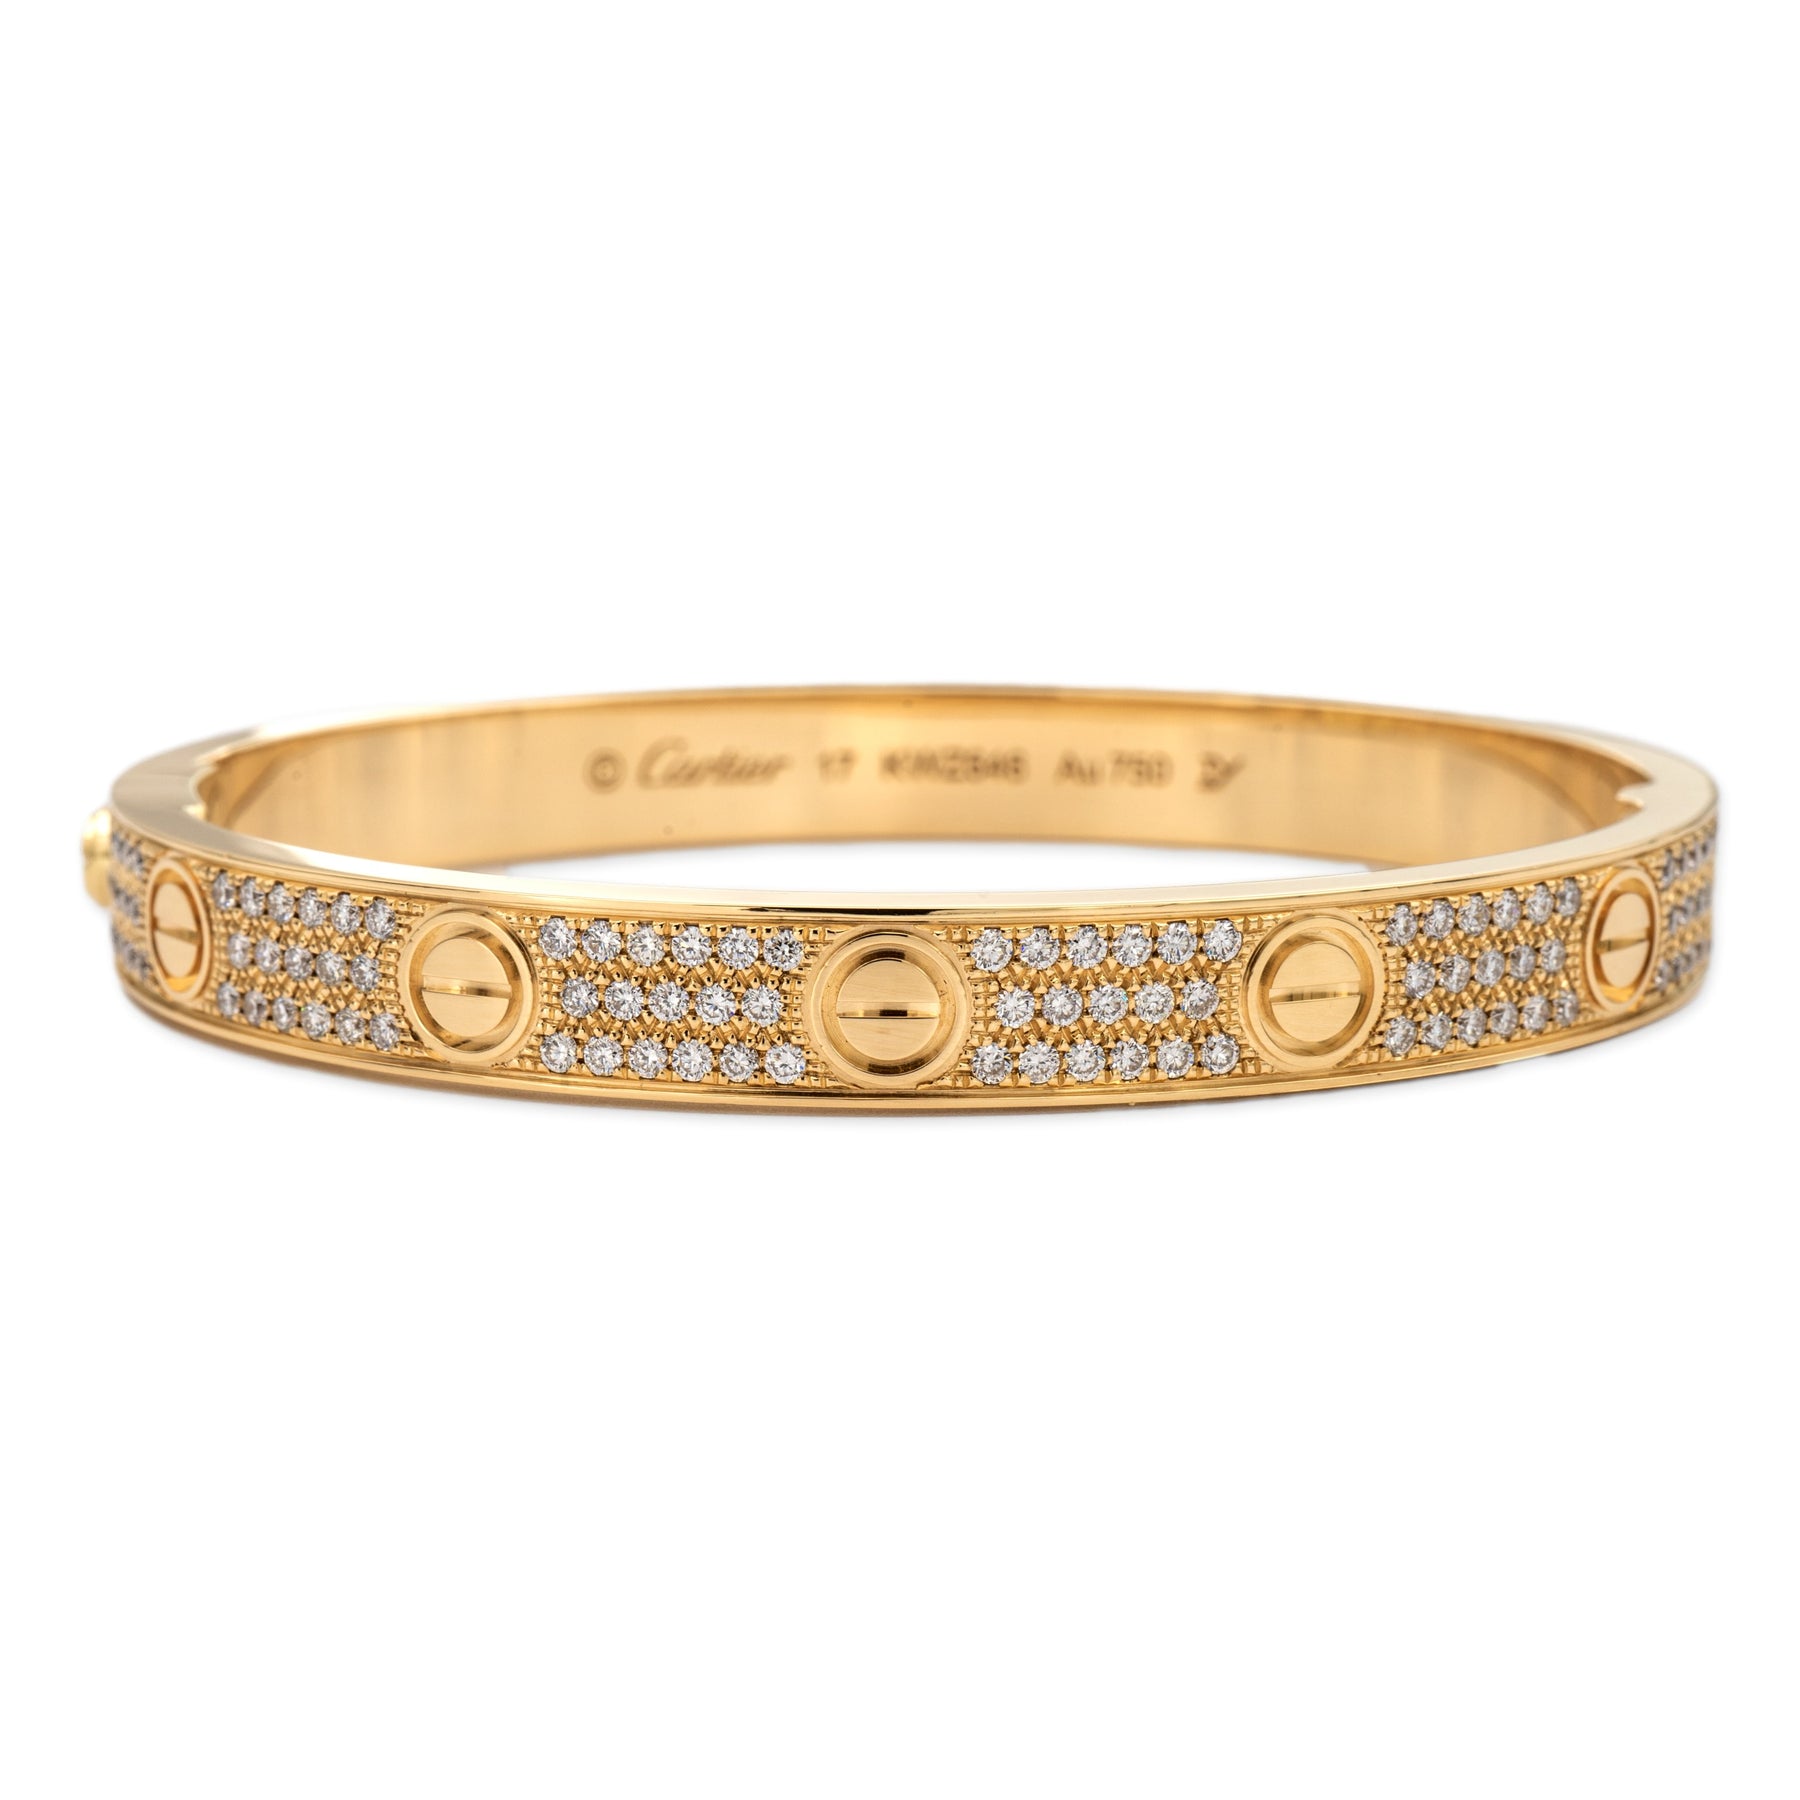 Cartier Love Bangle Bracelet Diamond Paved 18K Yellow Gold Size 17